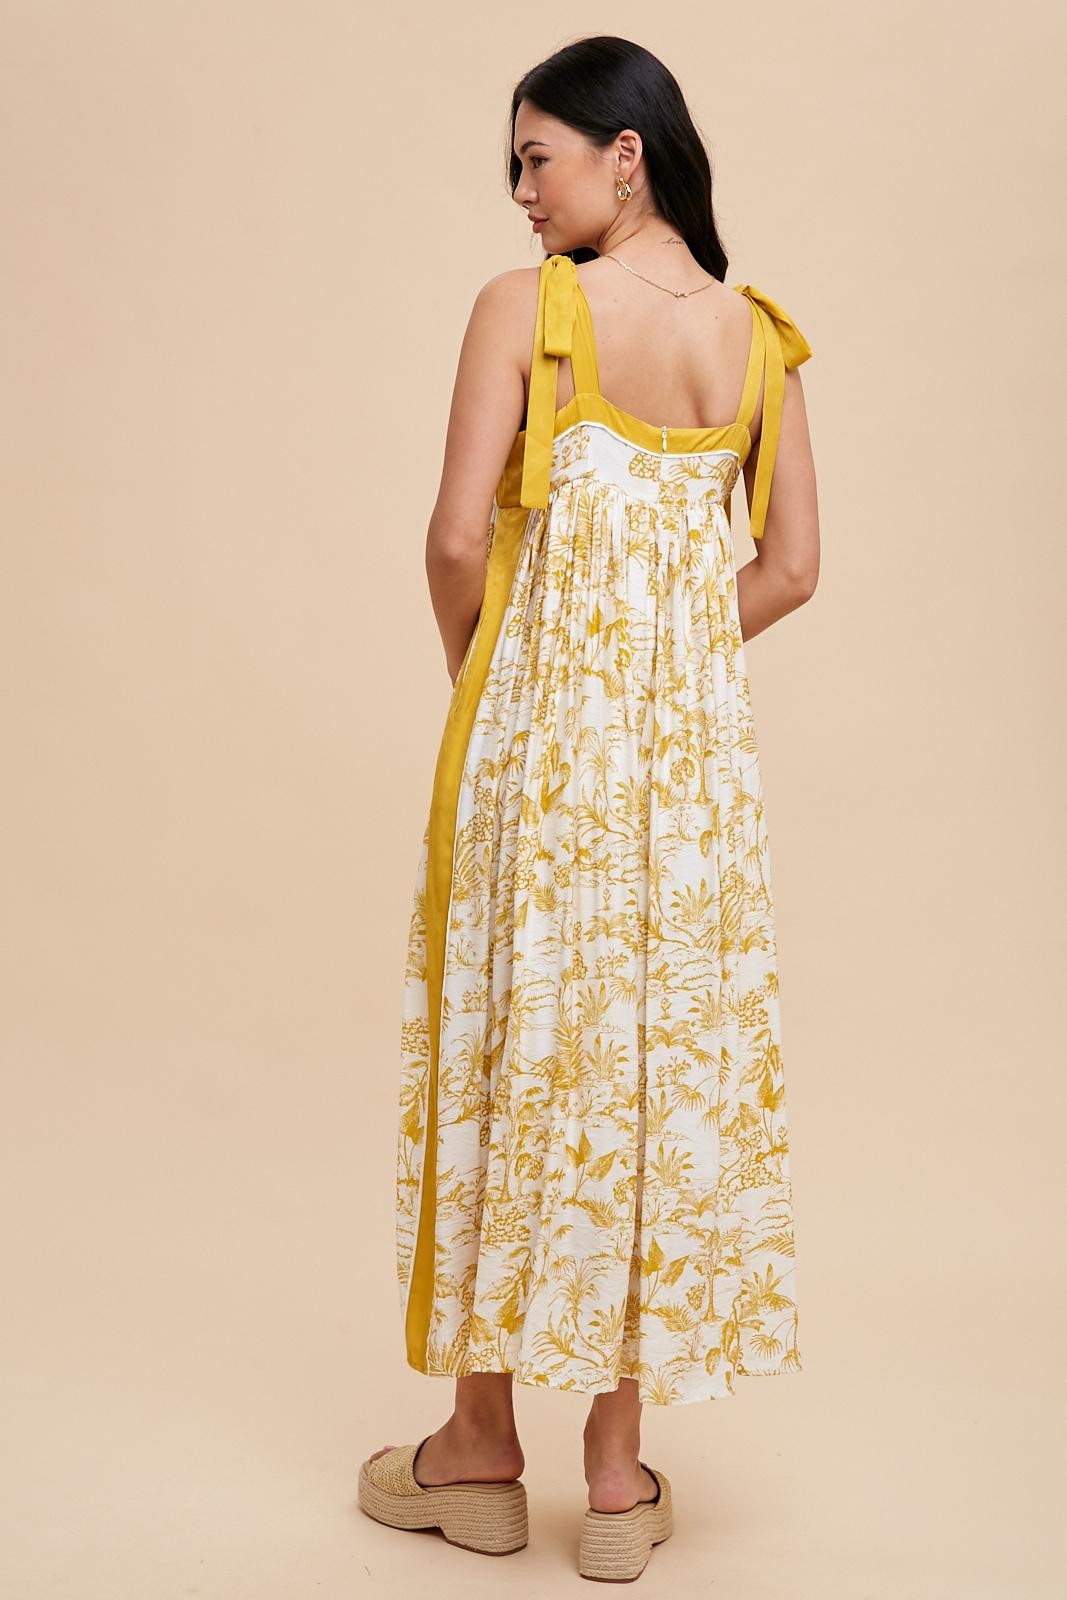 Dominika Floral Dress